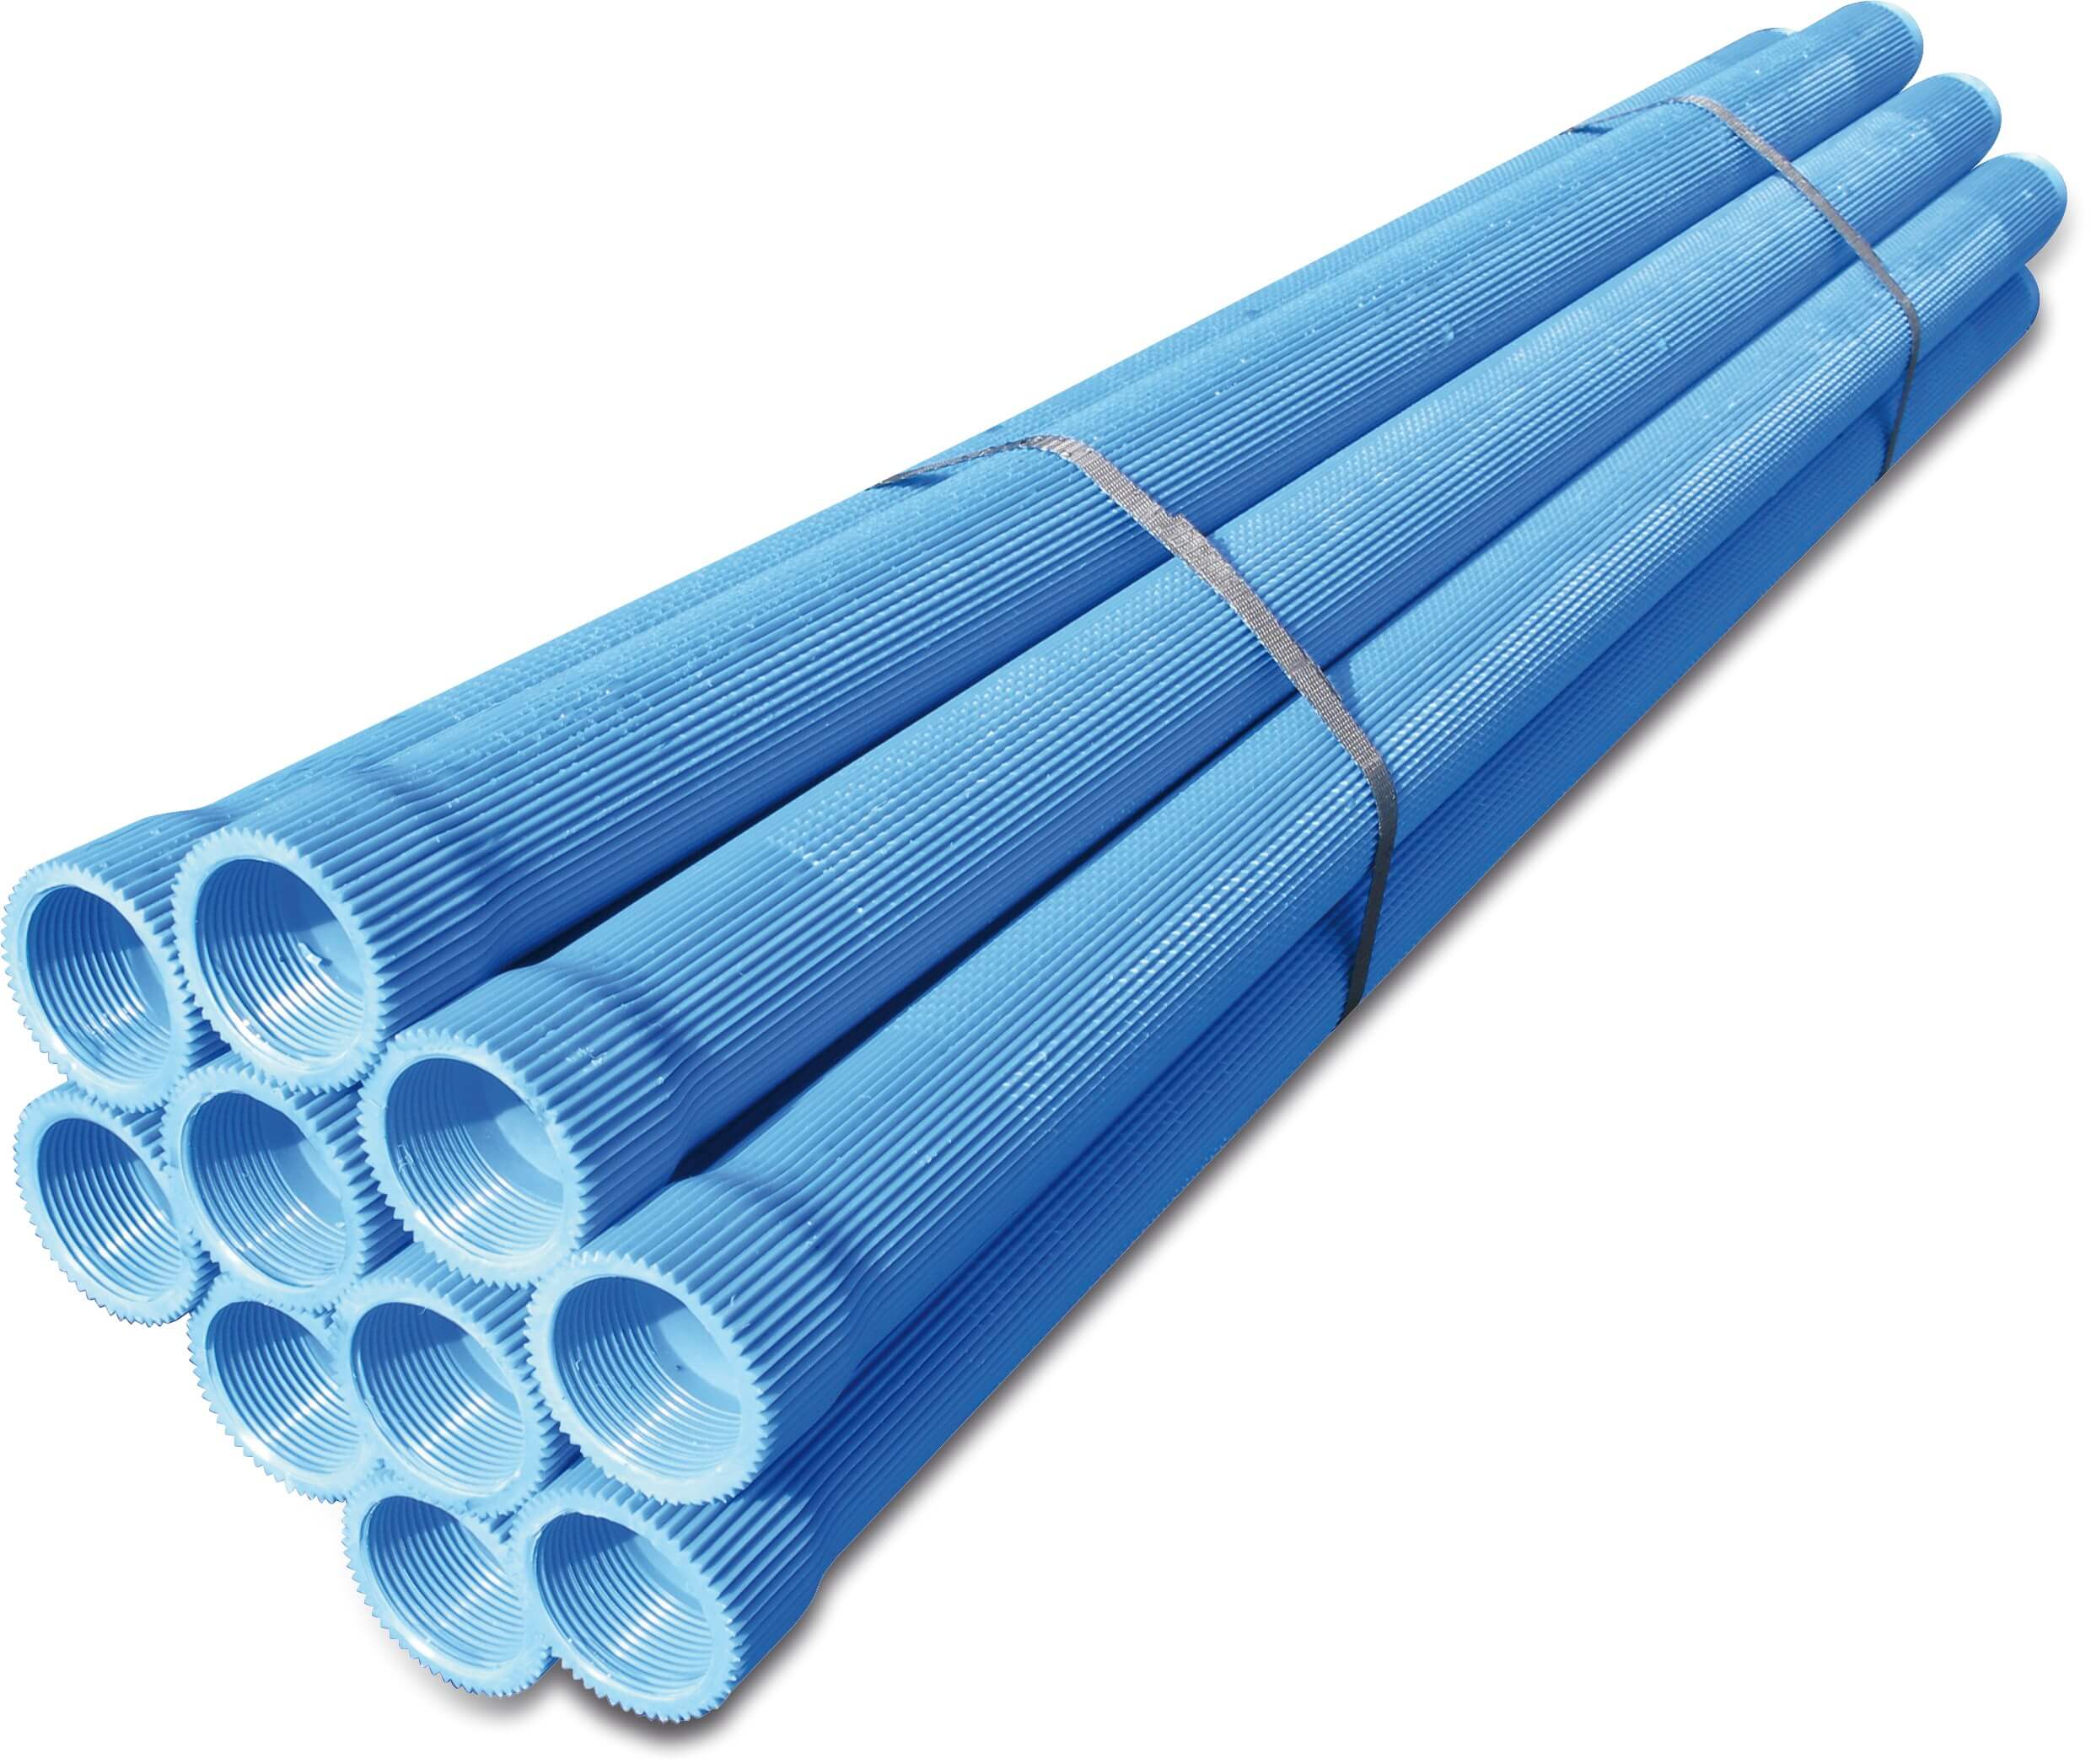 Rippenfilter PVC-U 1 1/4" Innengewinde x Außengewinde 0,3 mm Blau 1m type Rippenausführung L1